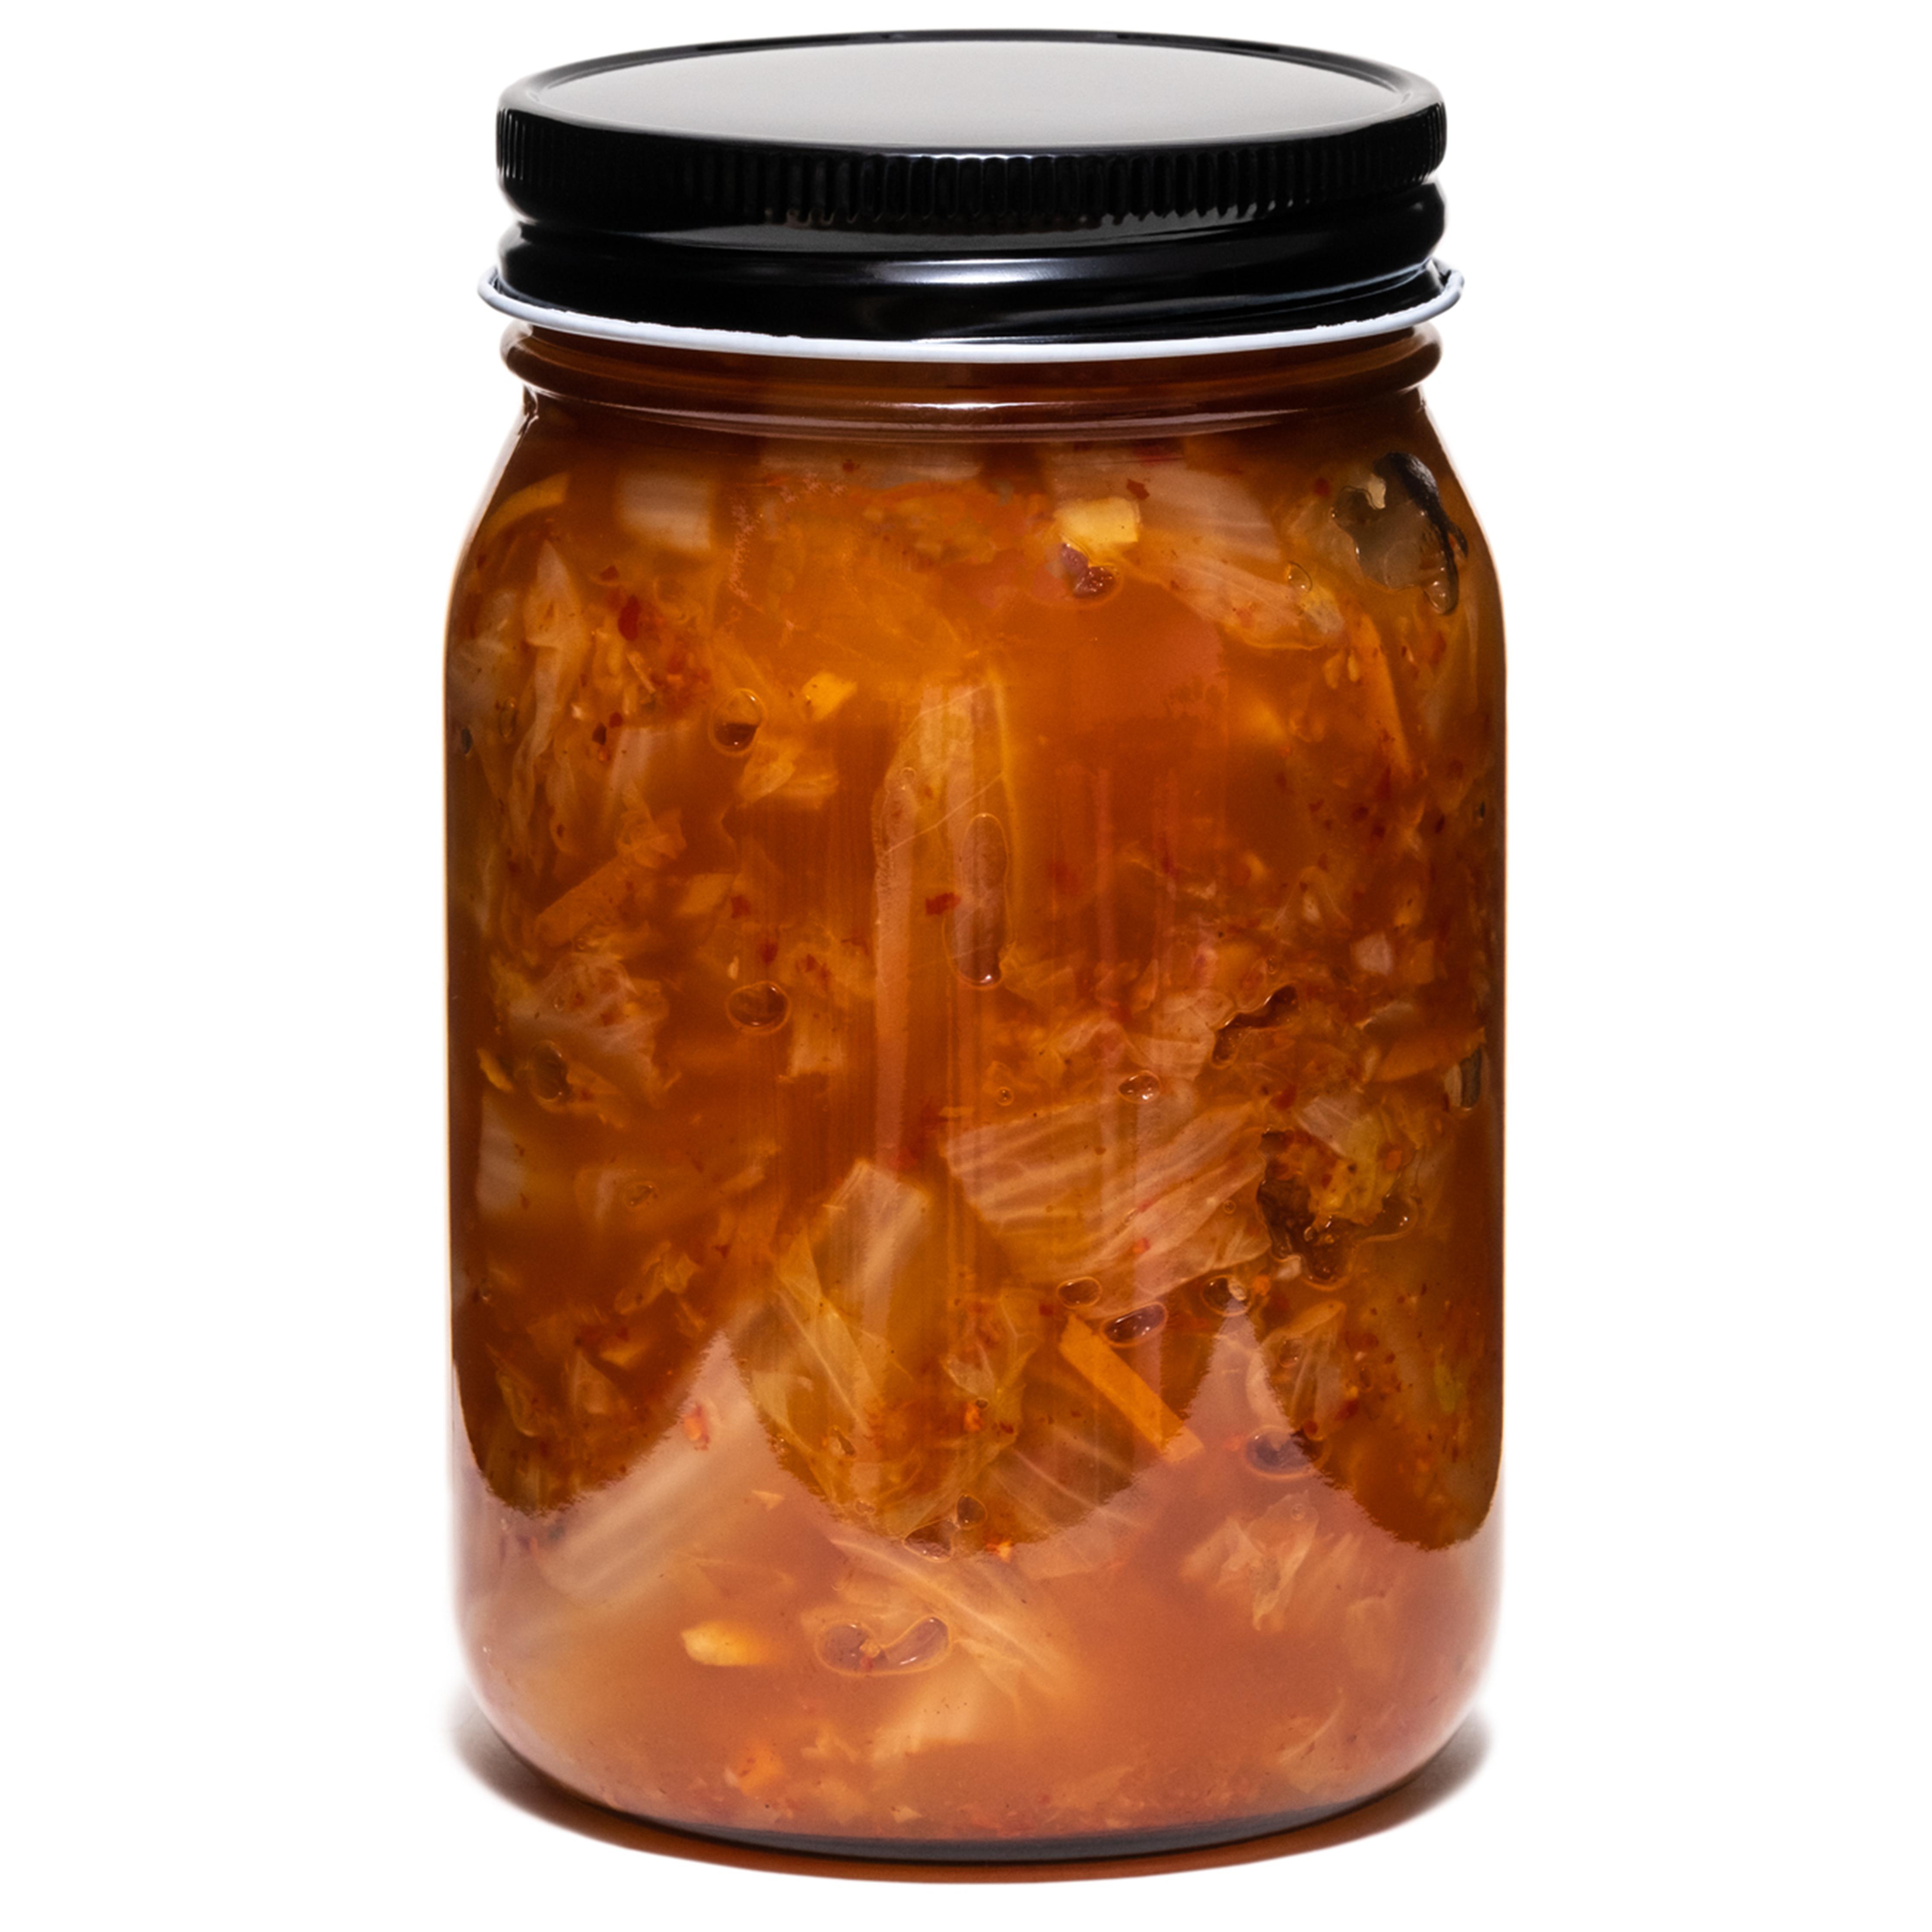 Kimchi Napa Orgánico- Coreana - Tout cru! Fermentación                                